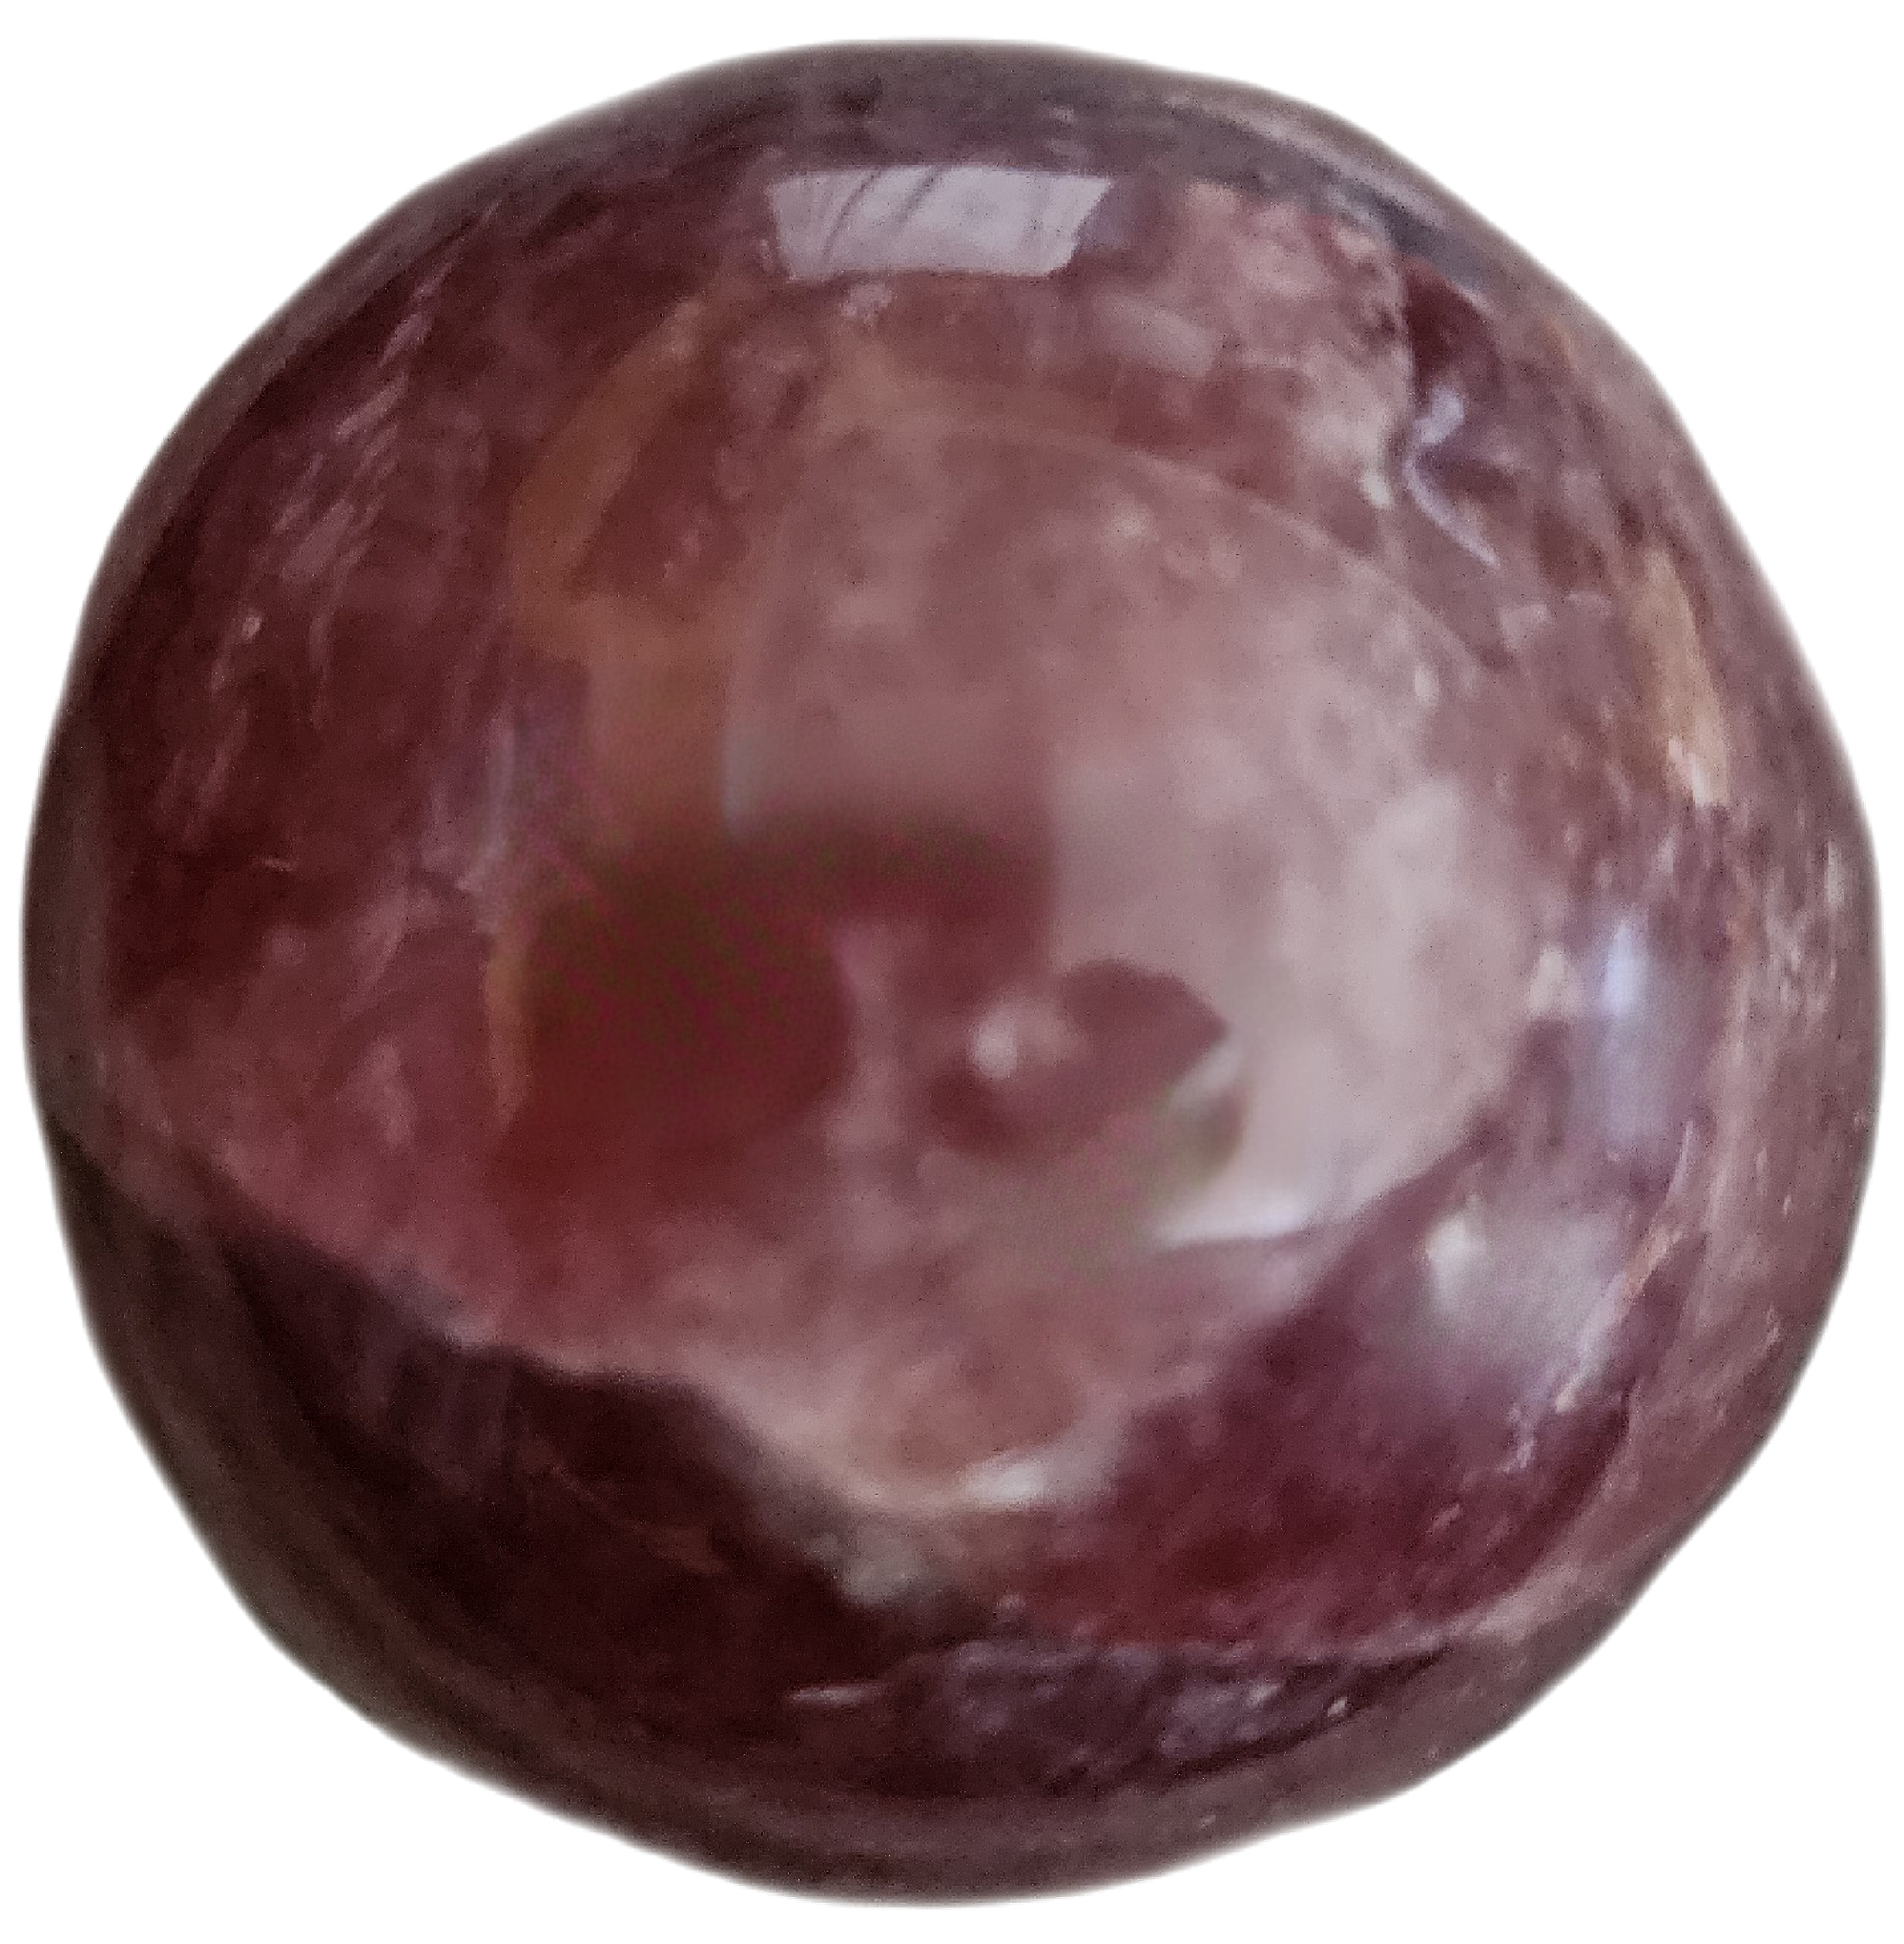 Raspberry/Strawberry Quartz Sphere